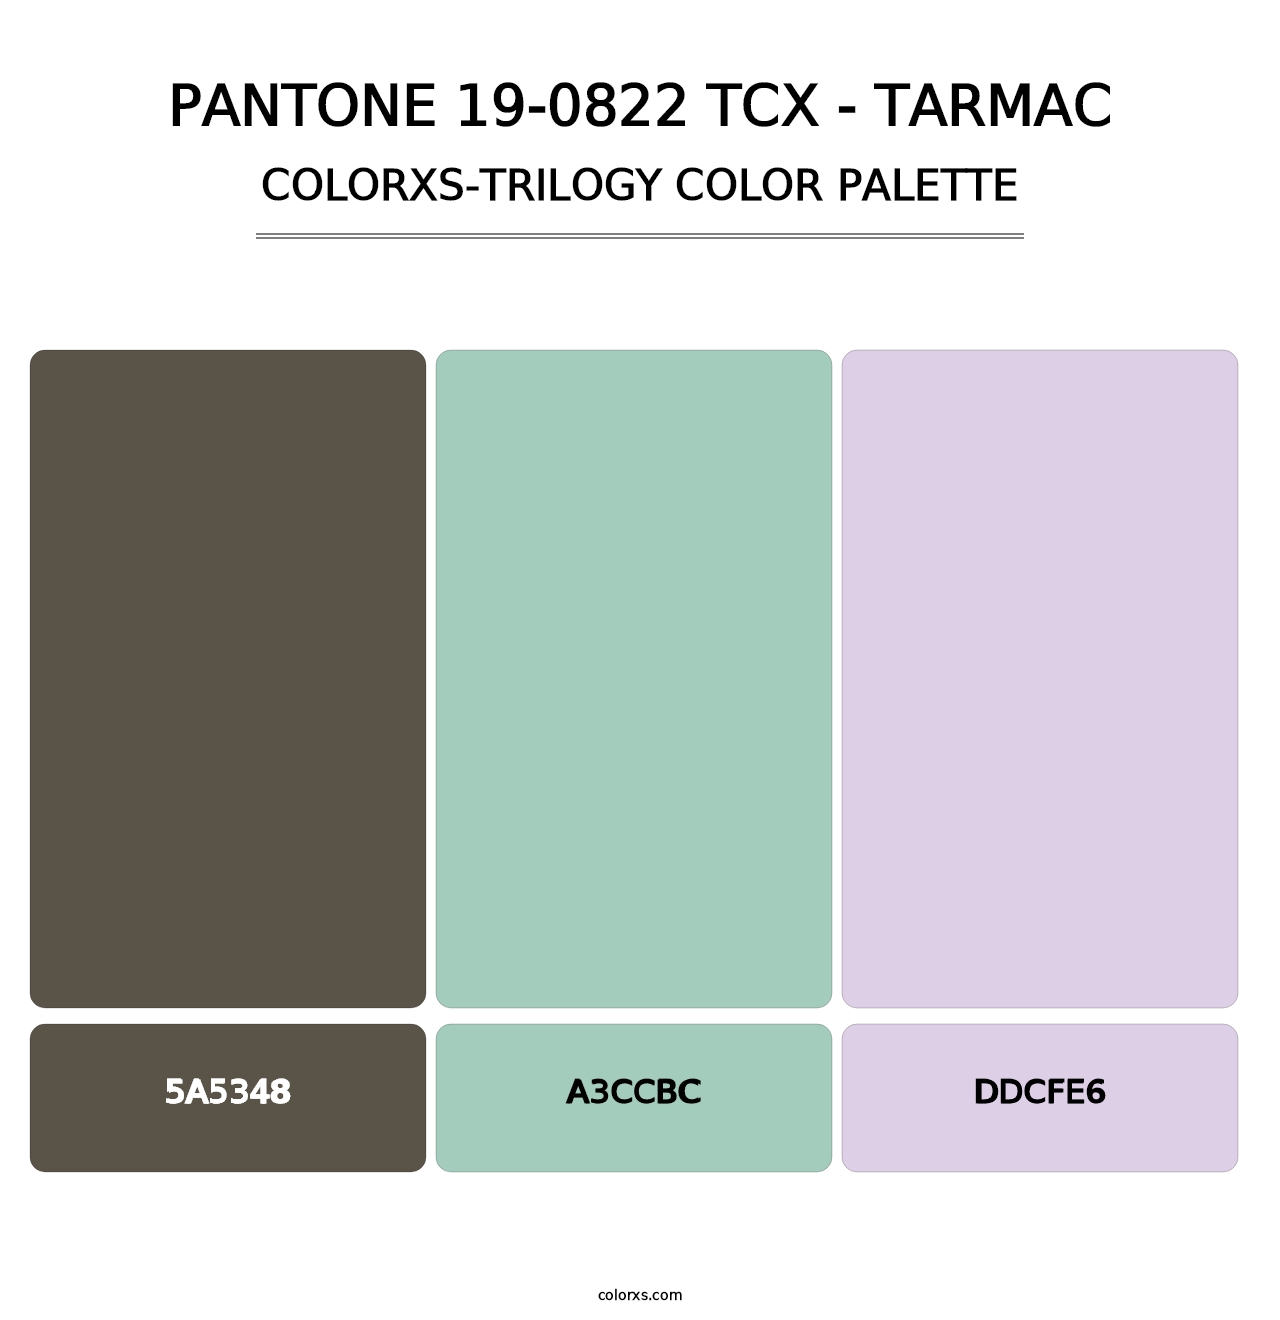 PANTONE 19-0822 TCX - Tarmac - Colorxs Trilogy Palette